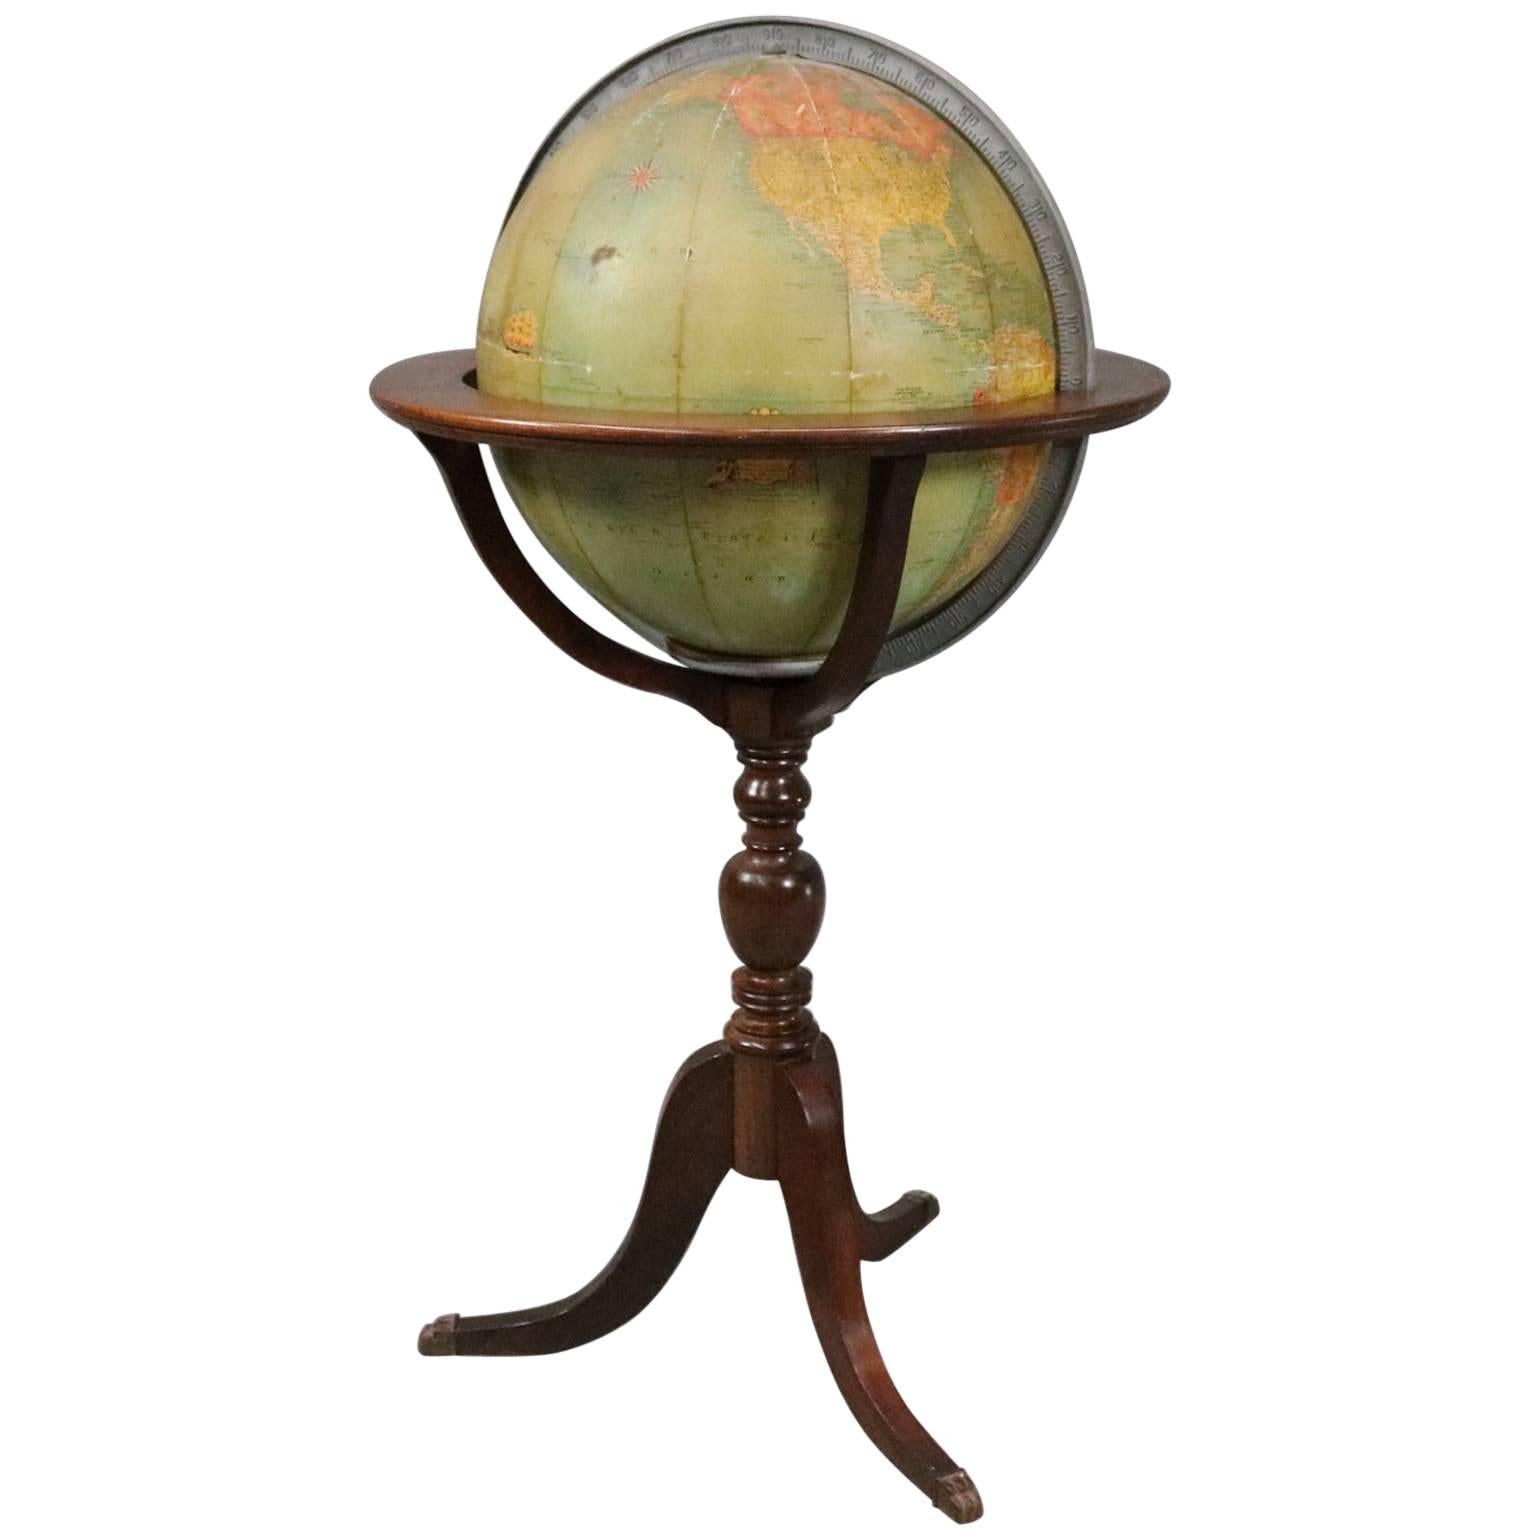 Vintage Illuminated Library World Globe on Floor Stand, circa 1930